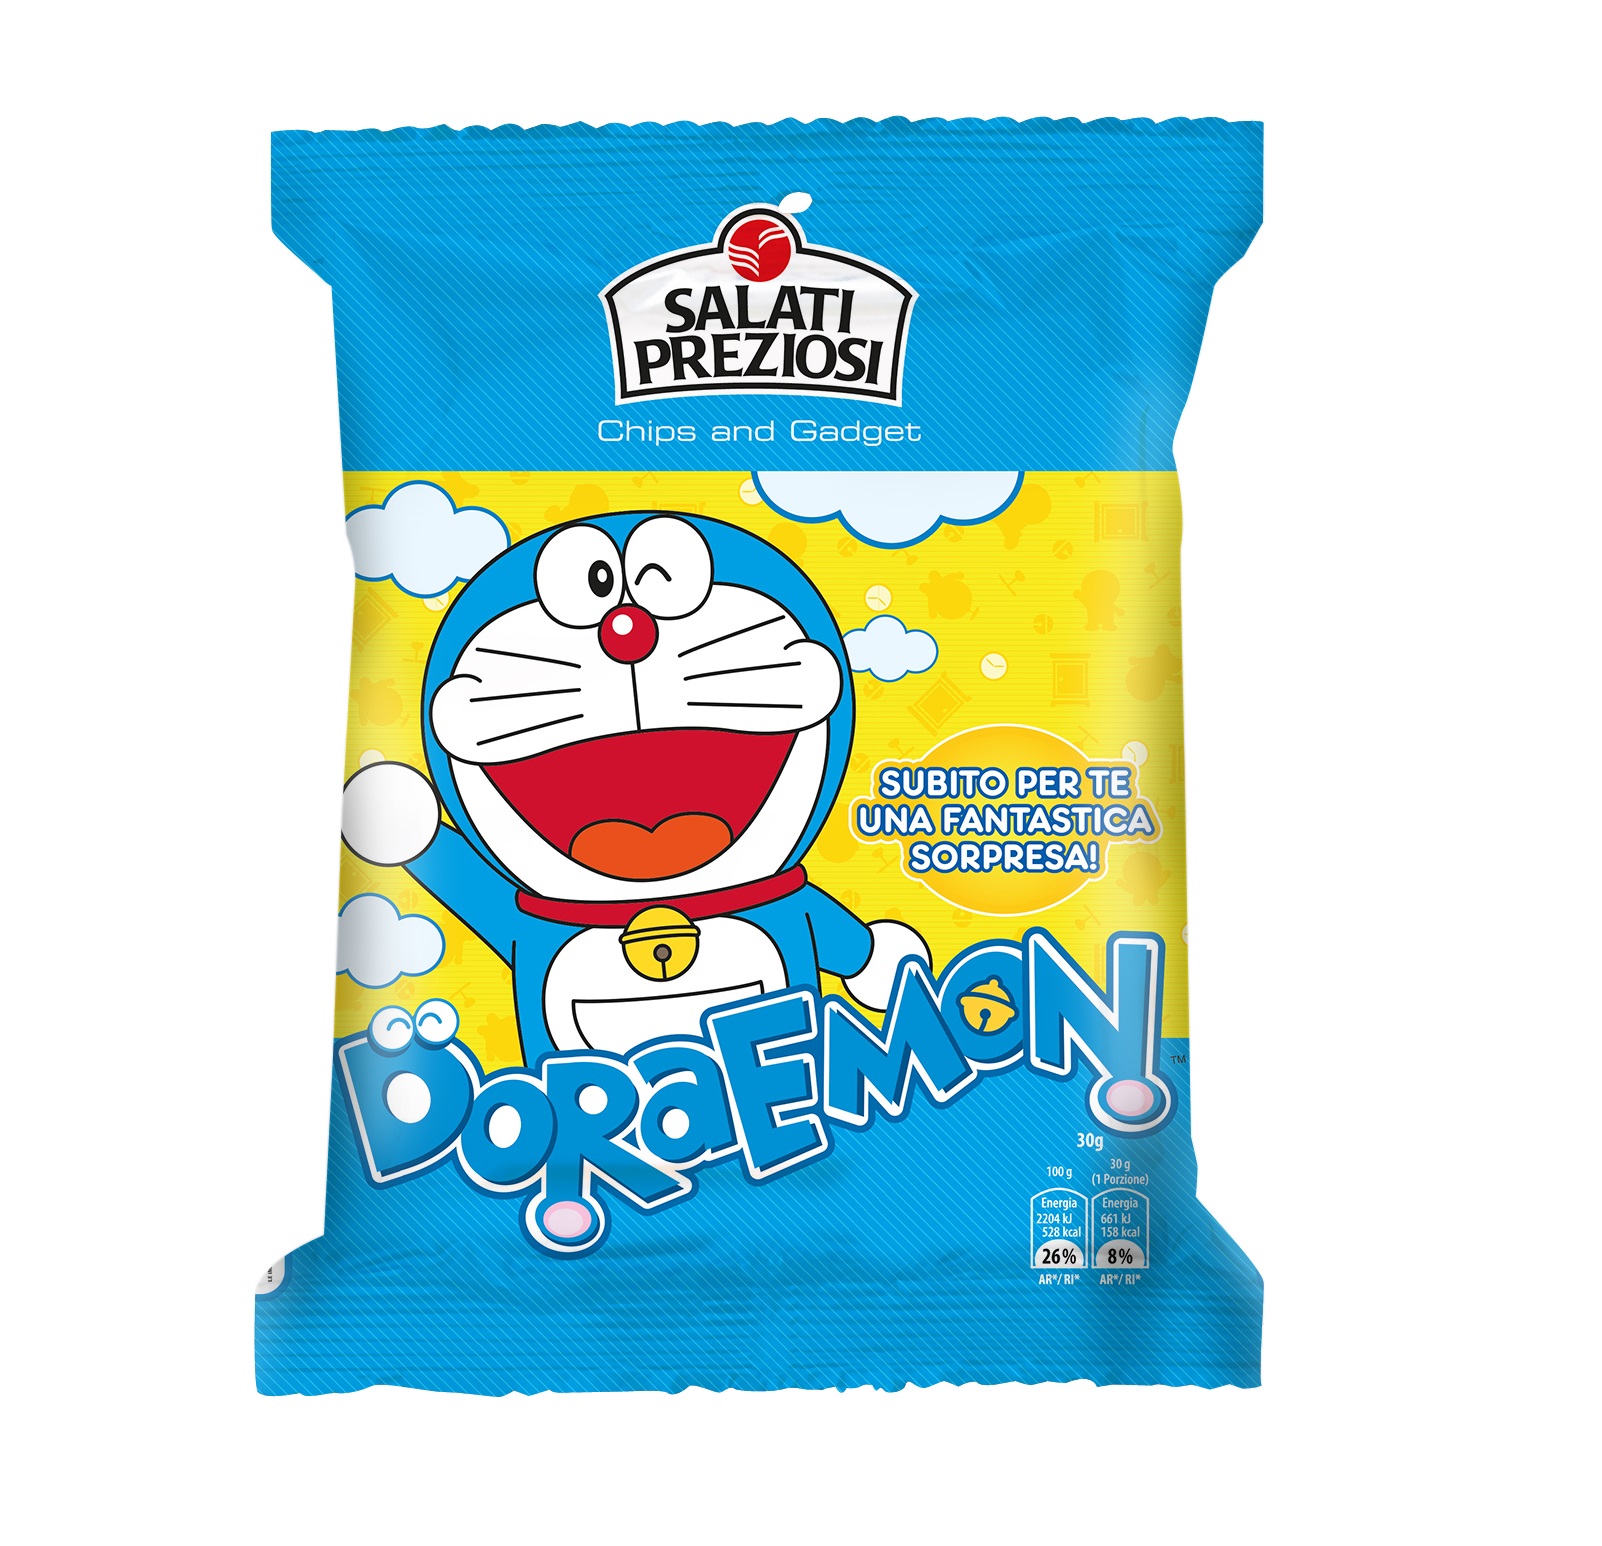 Tante licenze per l’utilizzo del character Doraemon